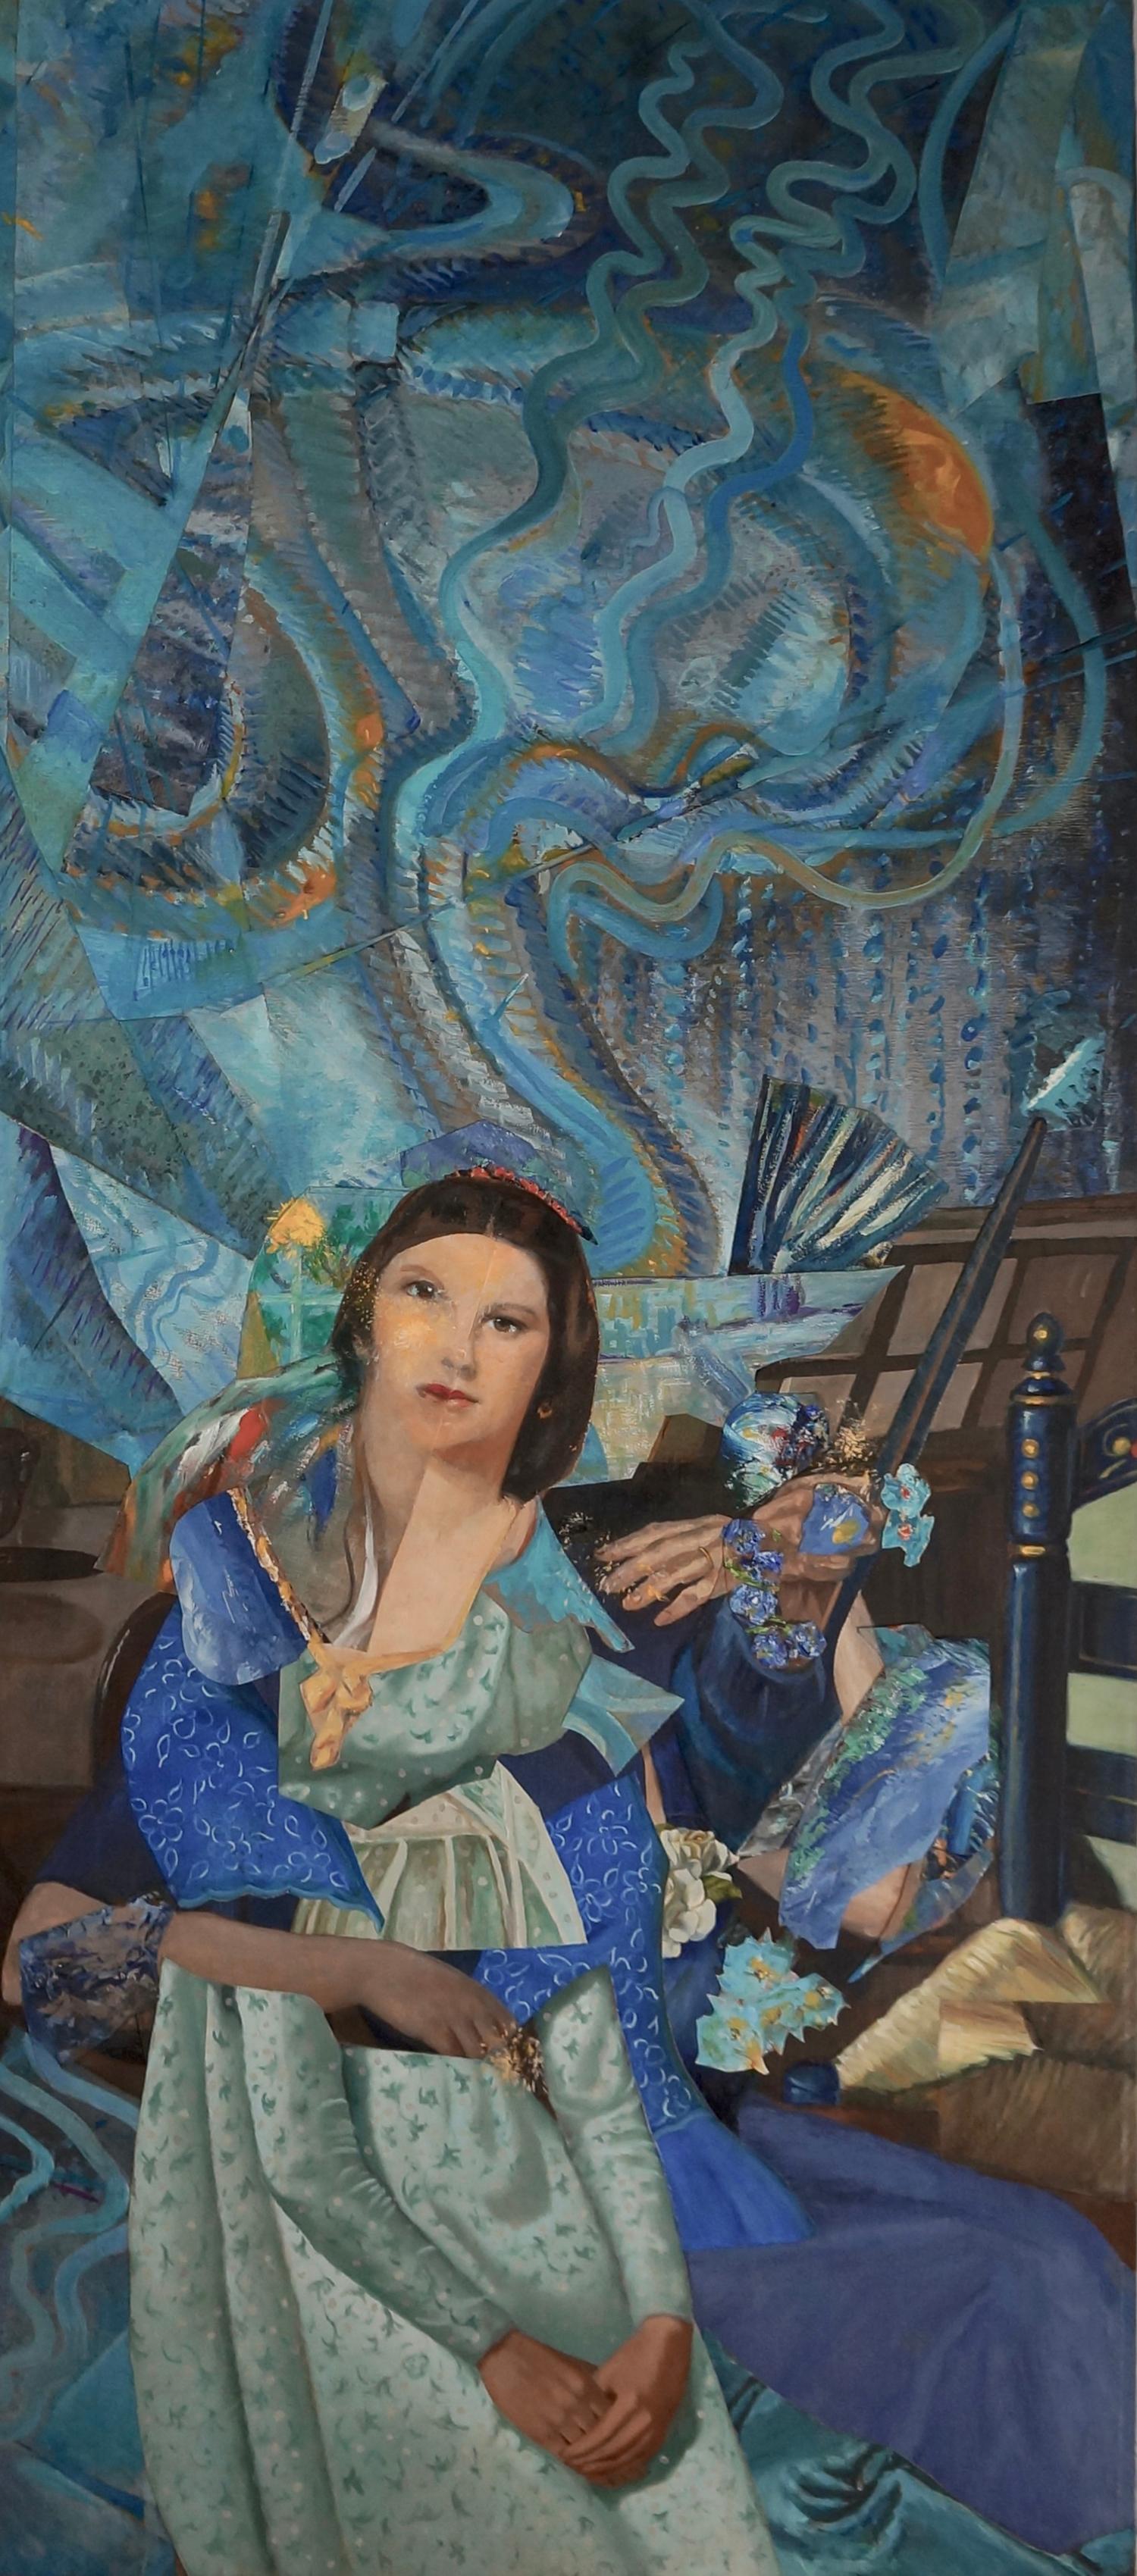 « Imaginary Portrait of Wanda Landowska », acrylique, collage, bleus, techniques mixtes - Mixed Media Art de John Baker